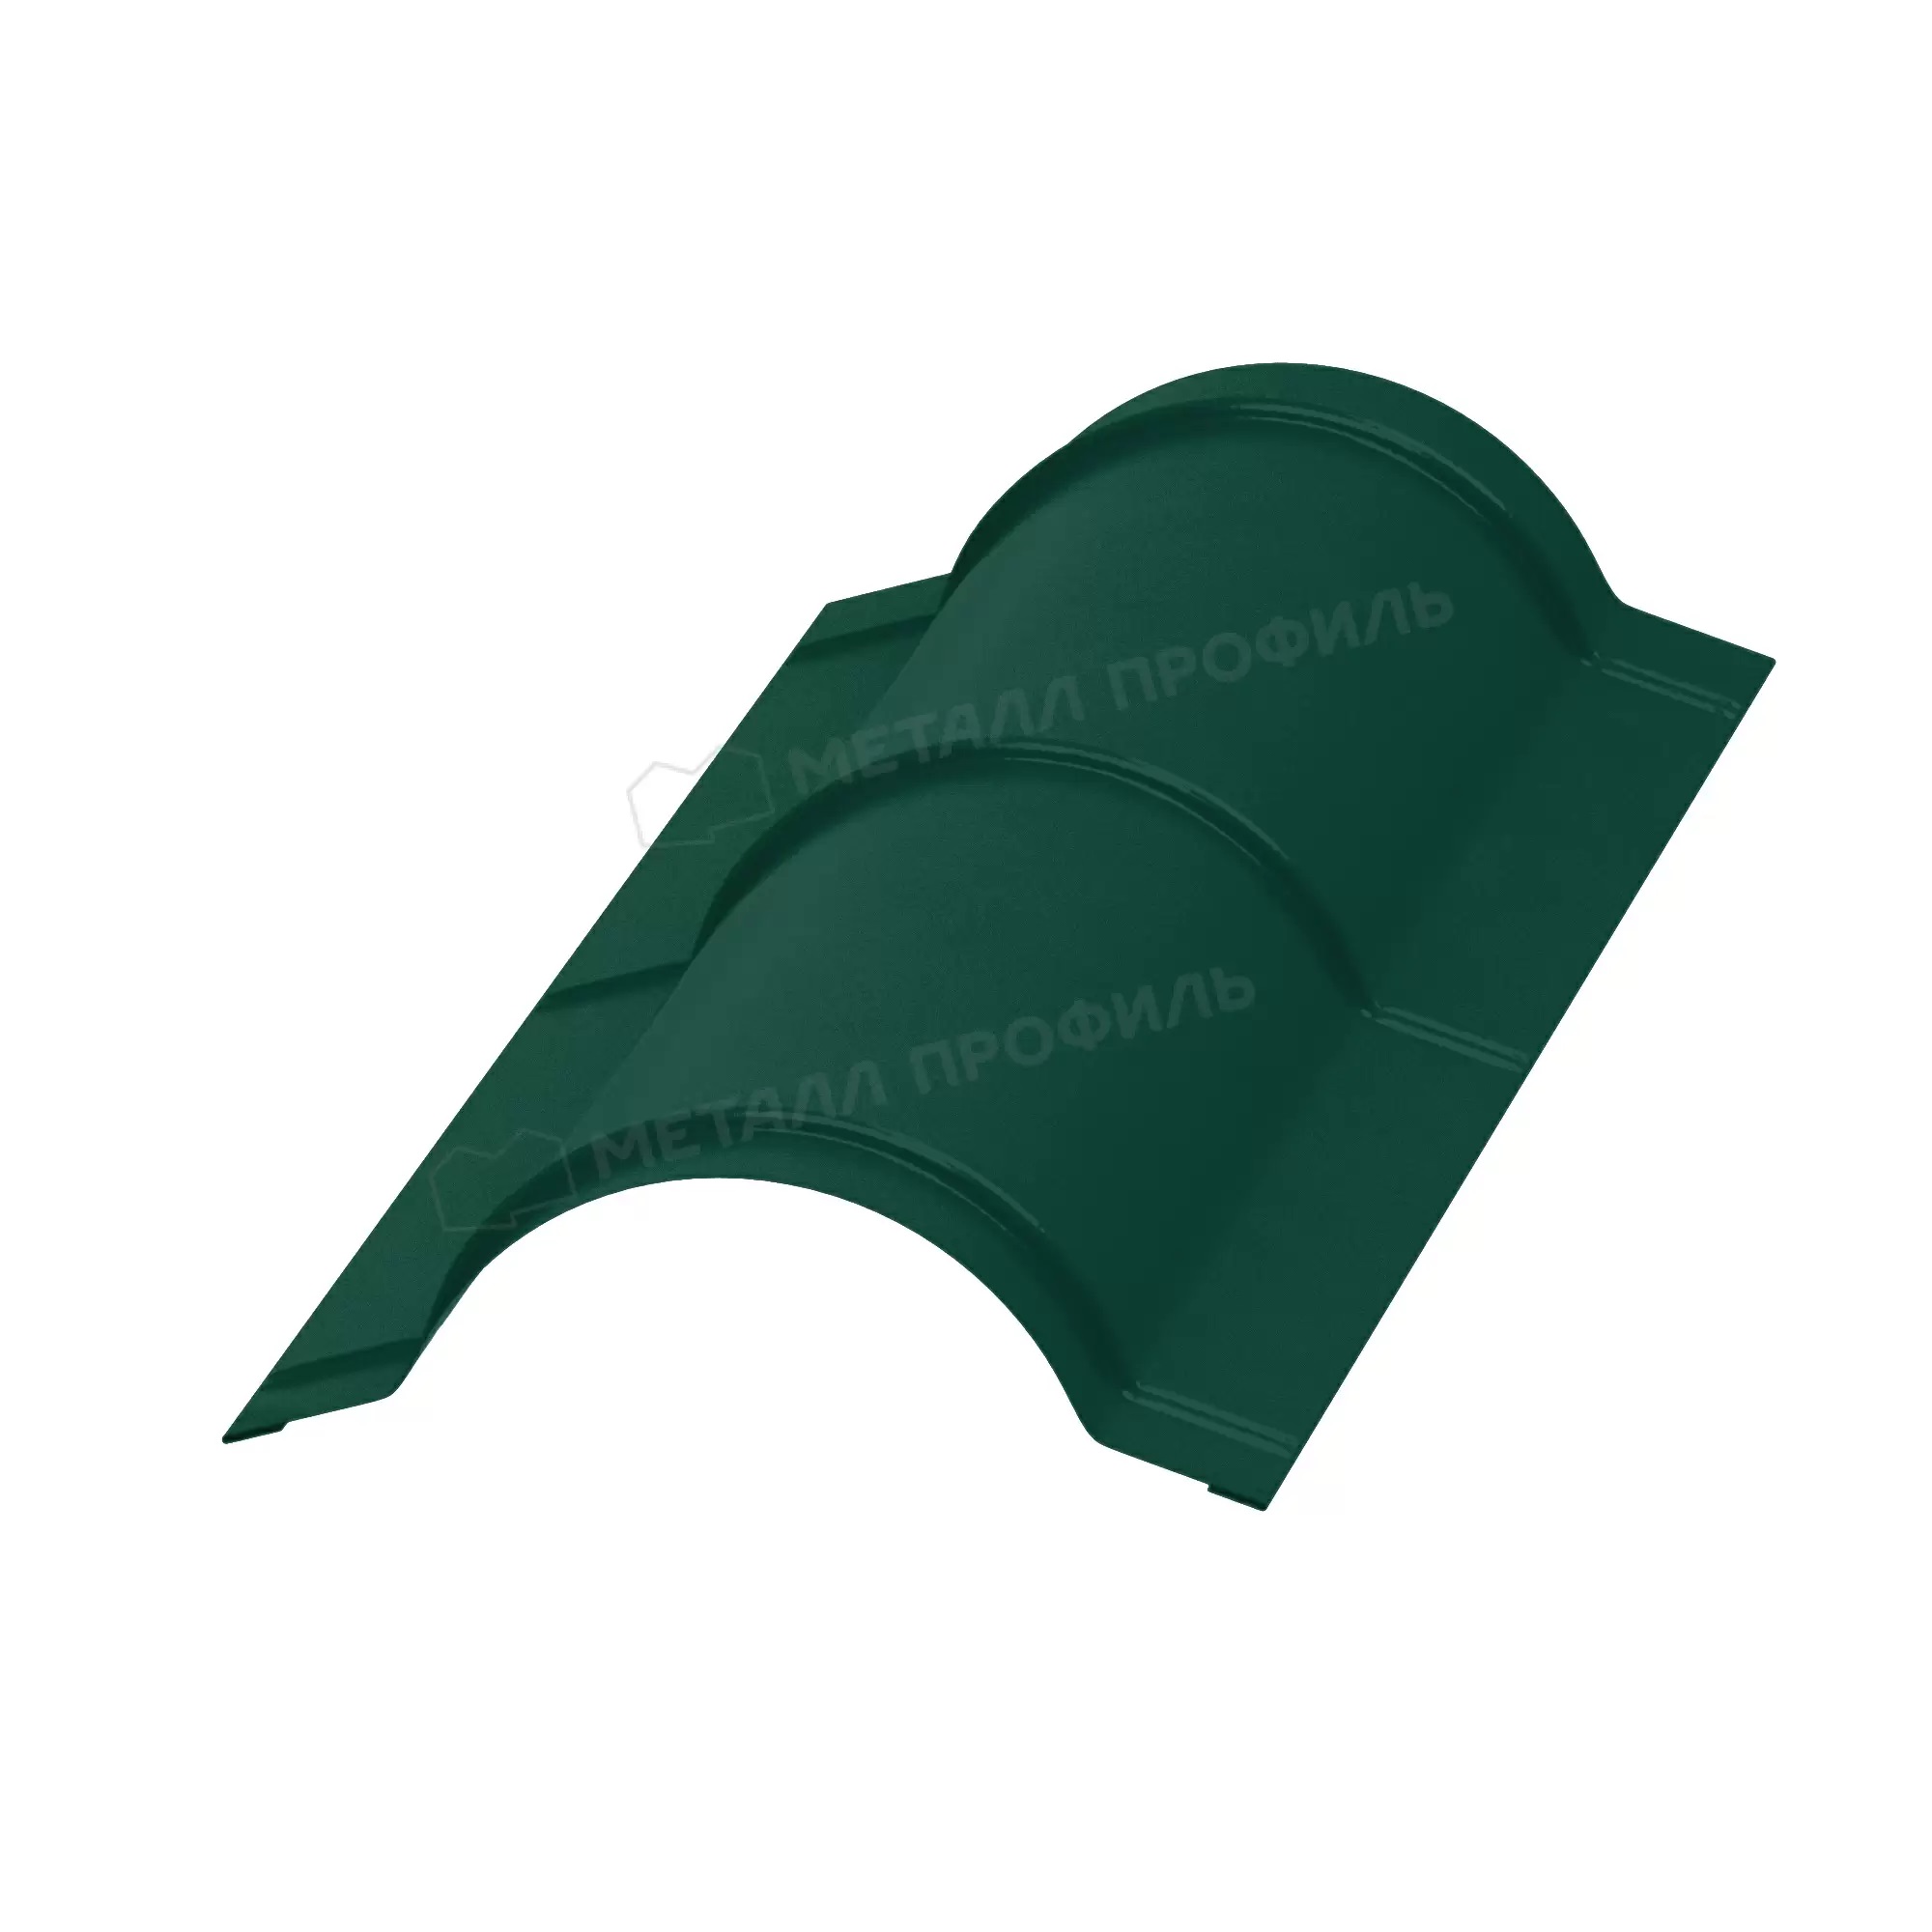 Планка конька круглого, покрытие полиэстер, цвет зелёный мох (6005),  R110*2000*0,5 мм